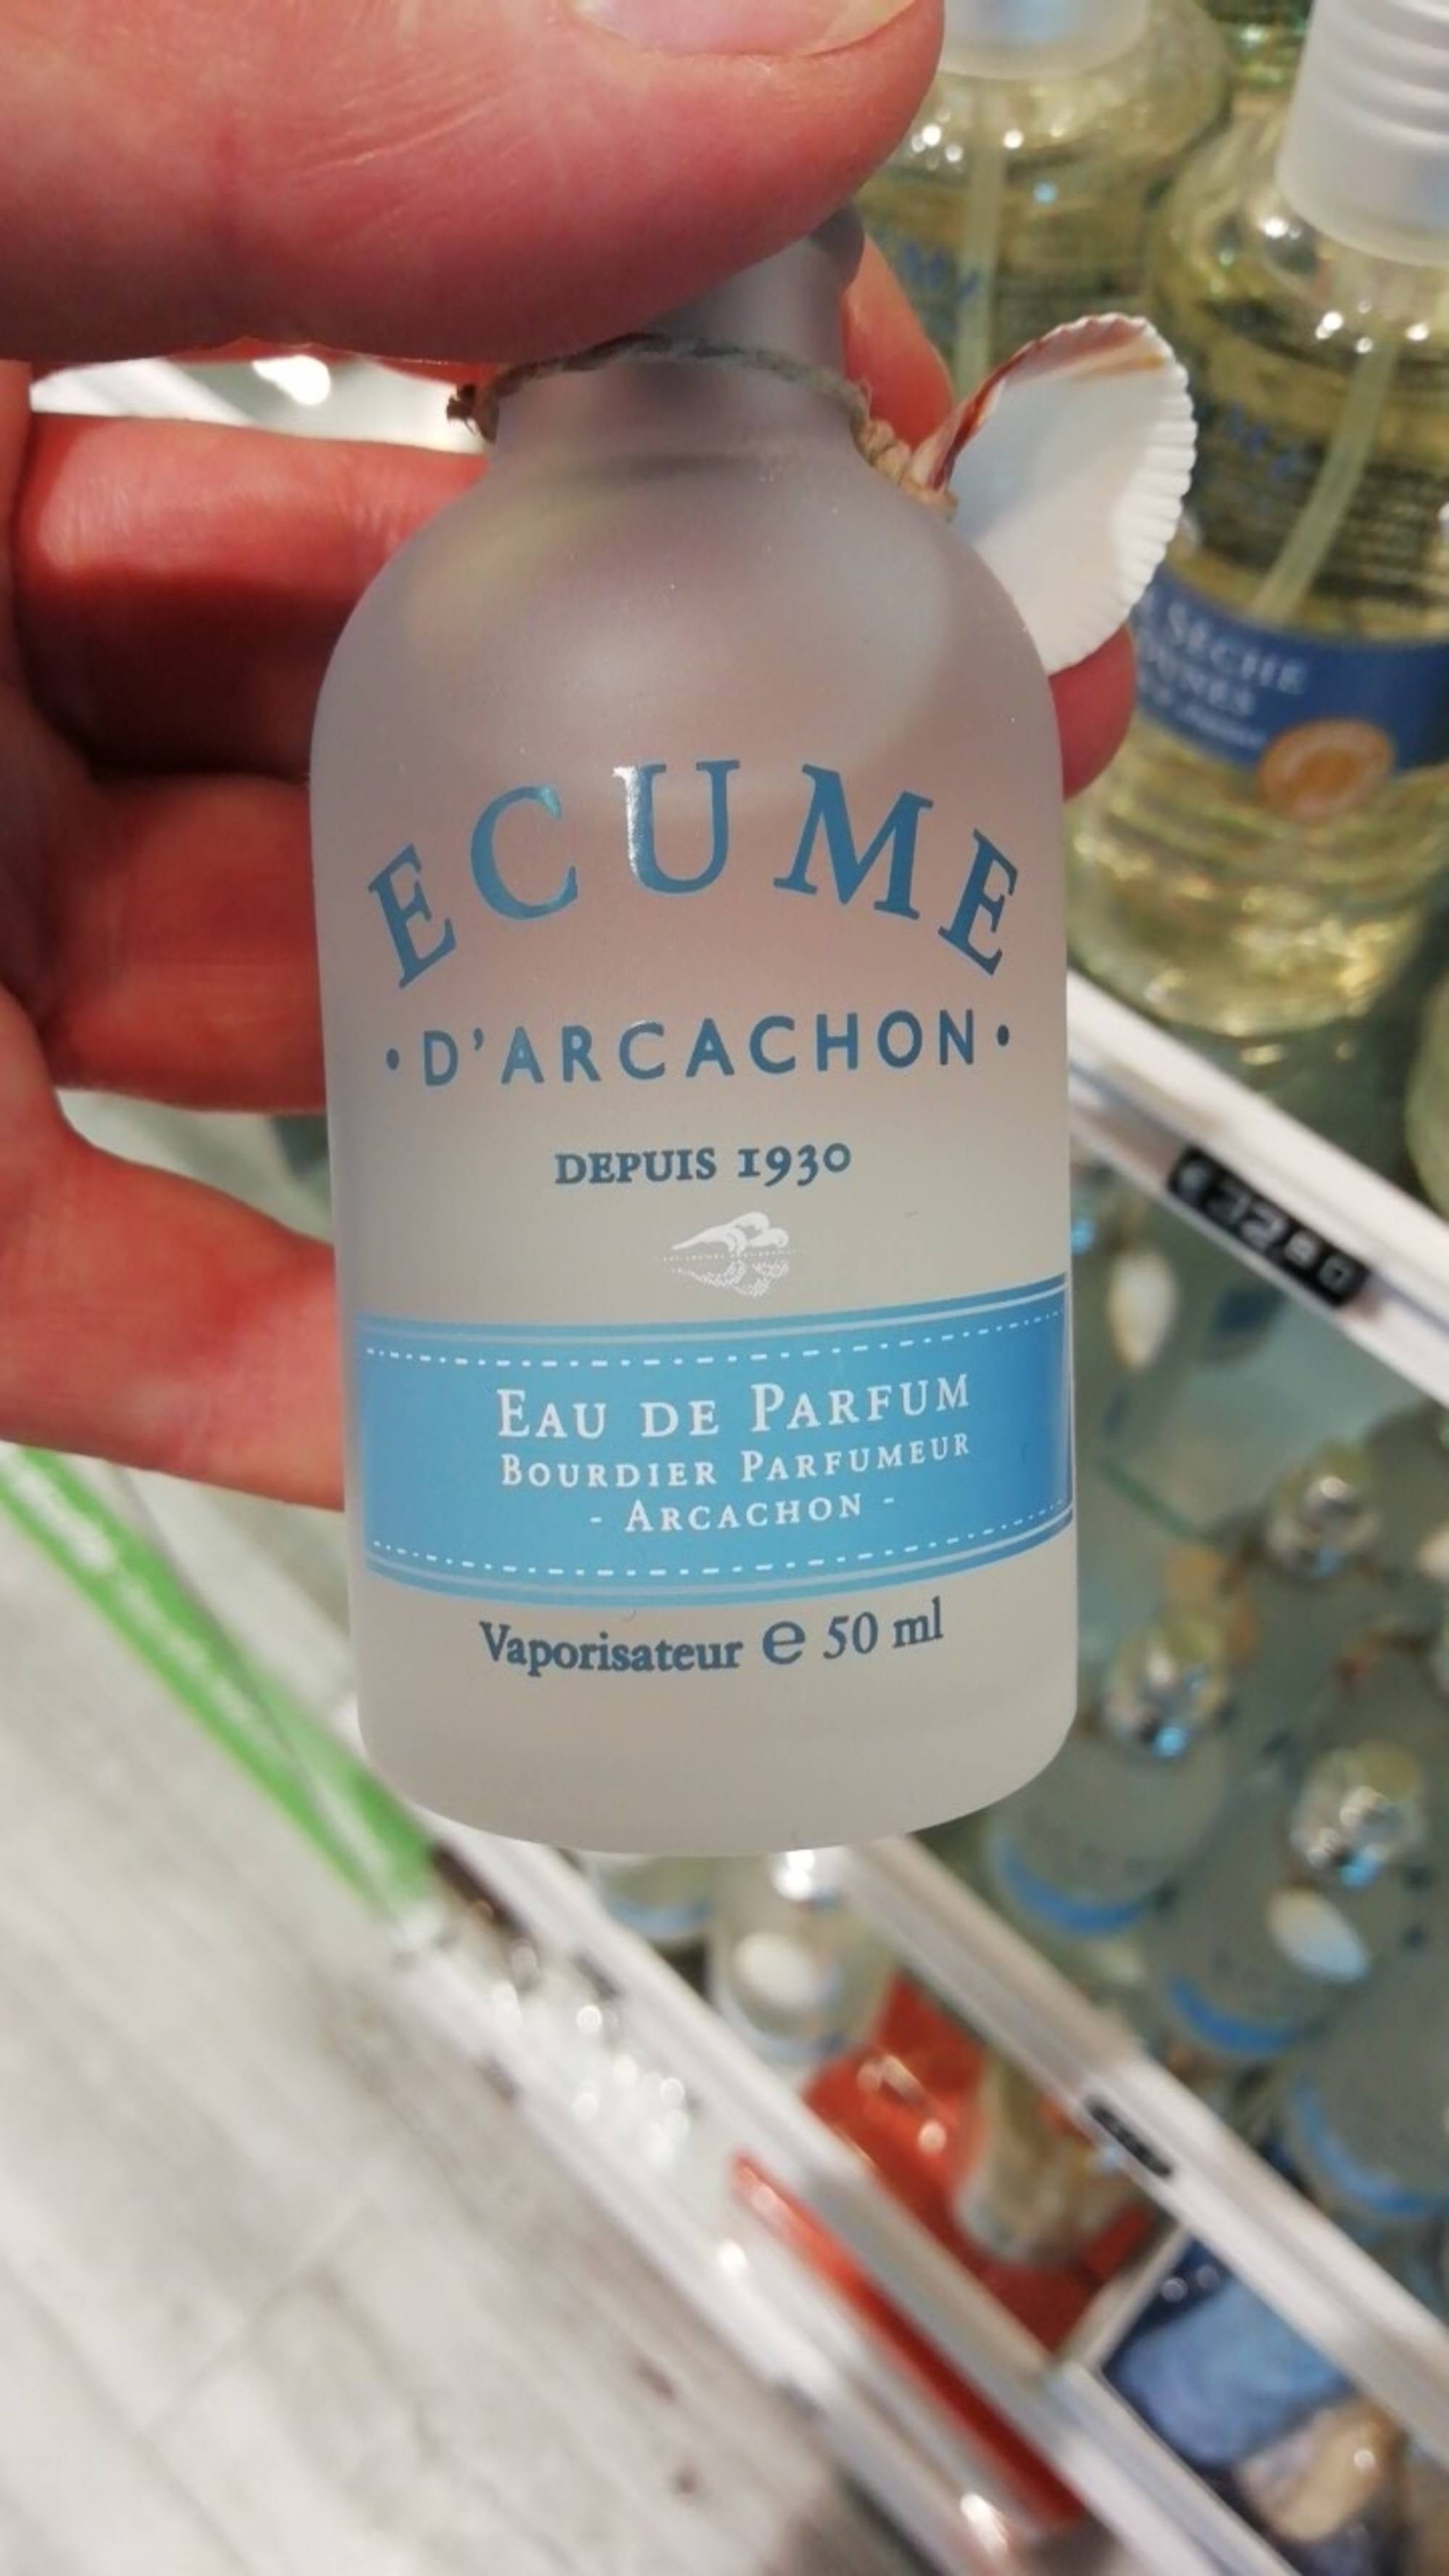 ECUME D'ARCACHON - Eau de parfum vaporisateur